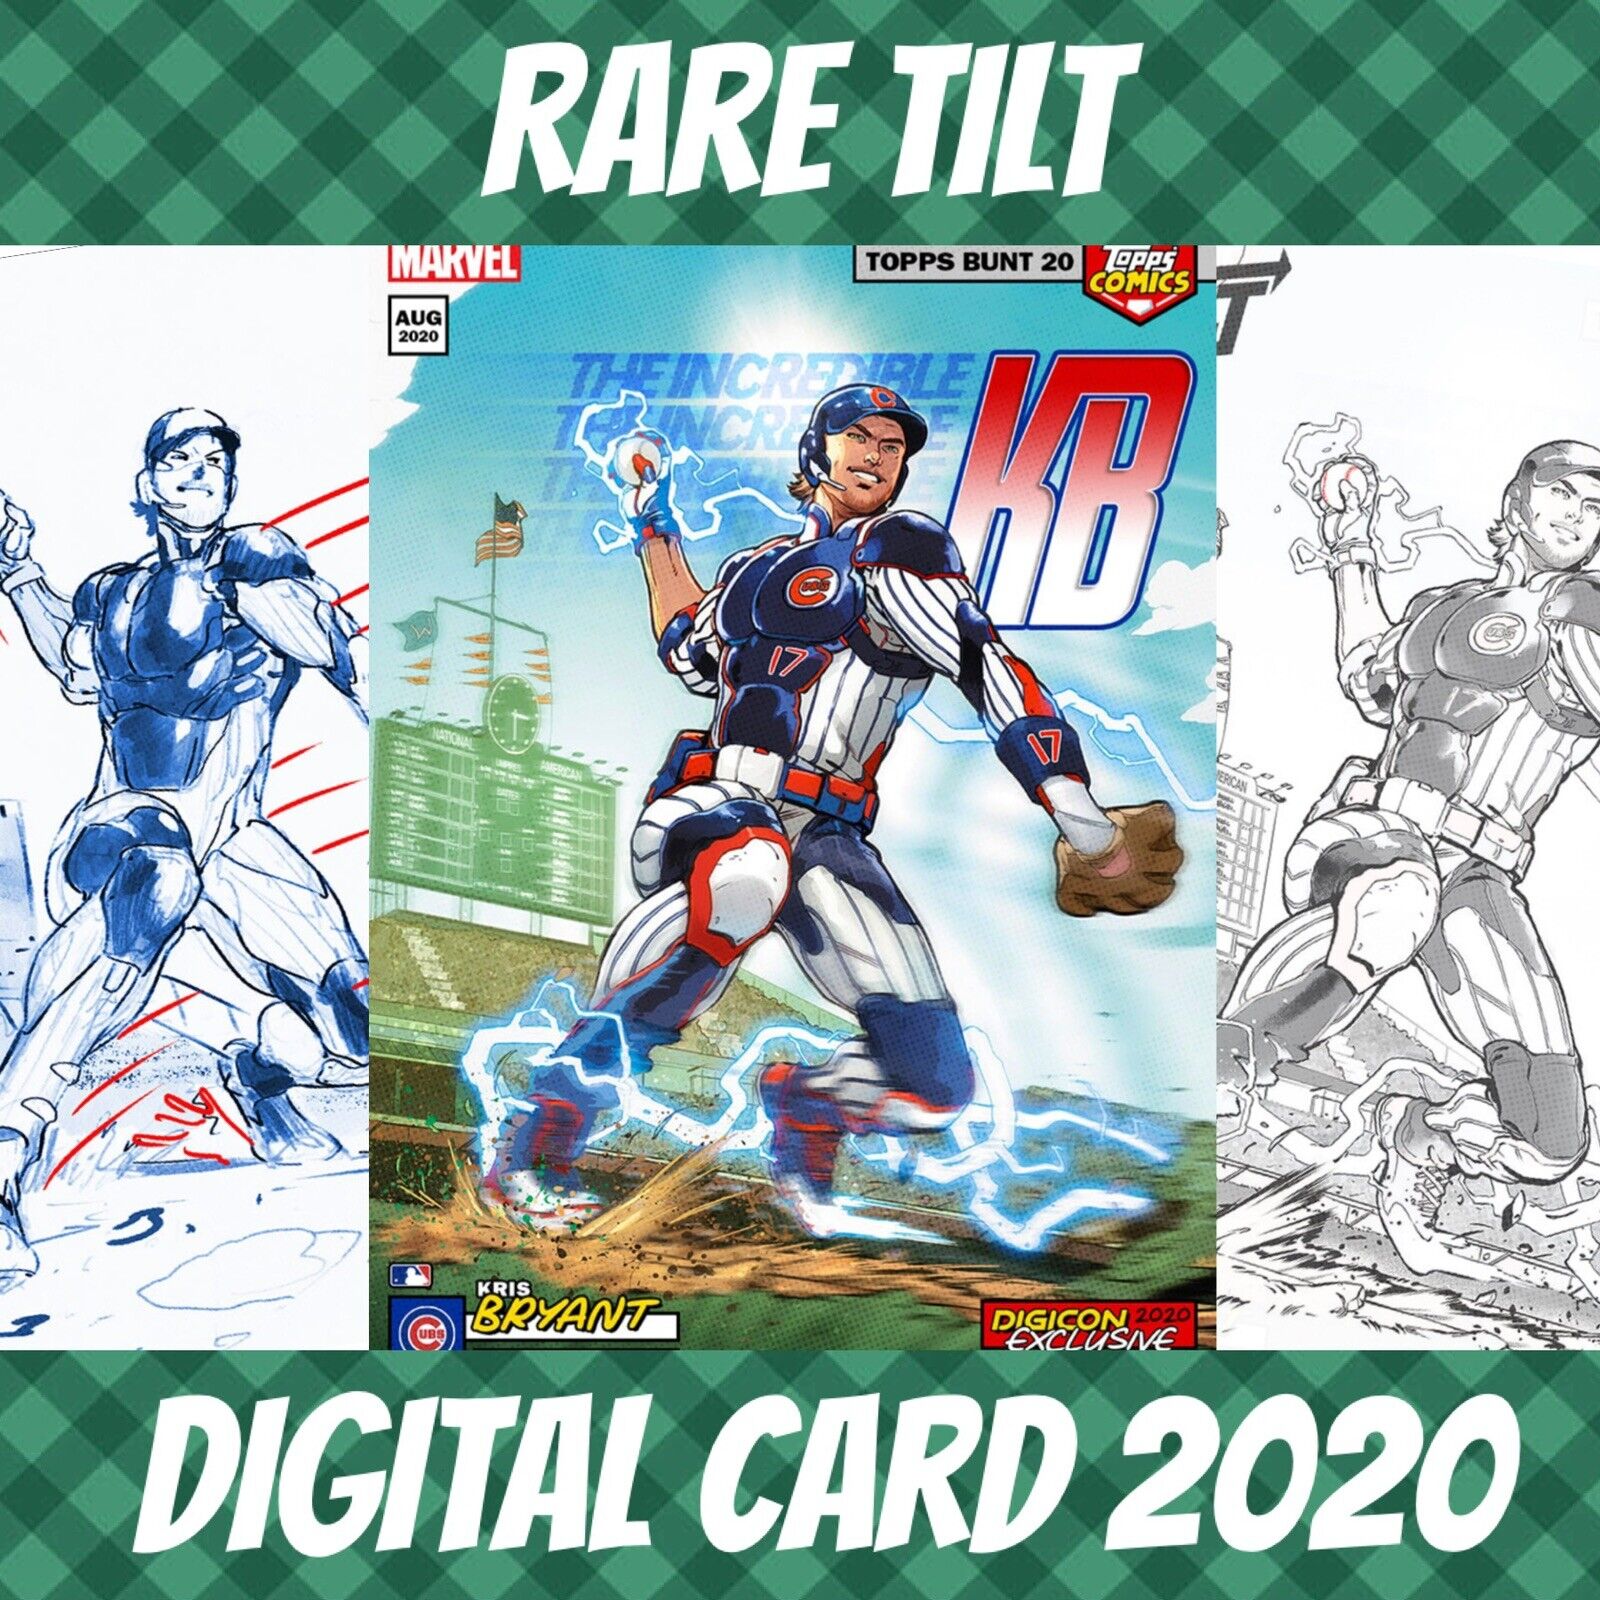 Topps bunt 21 kris bryant tilt comics marvel covers 2020 digital card